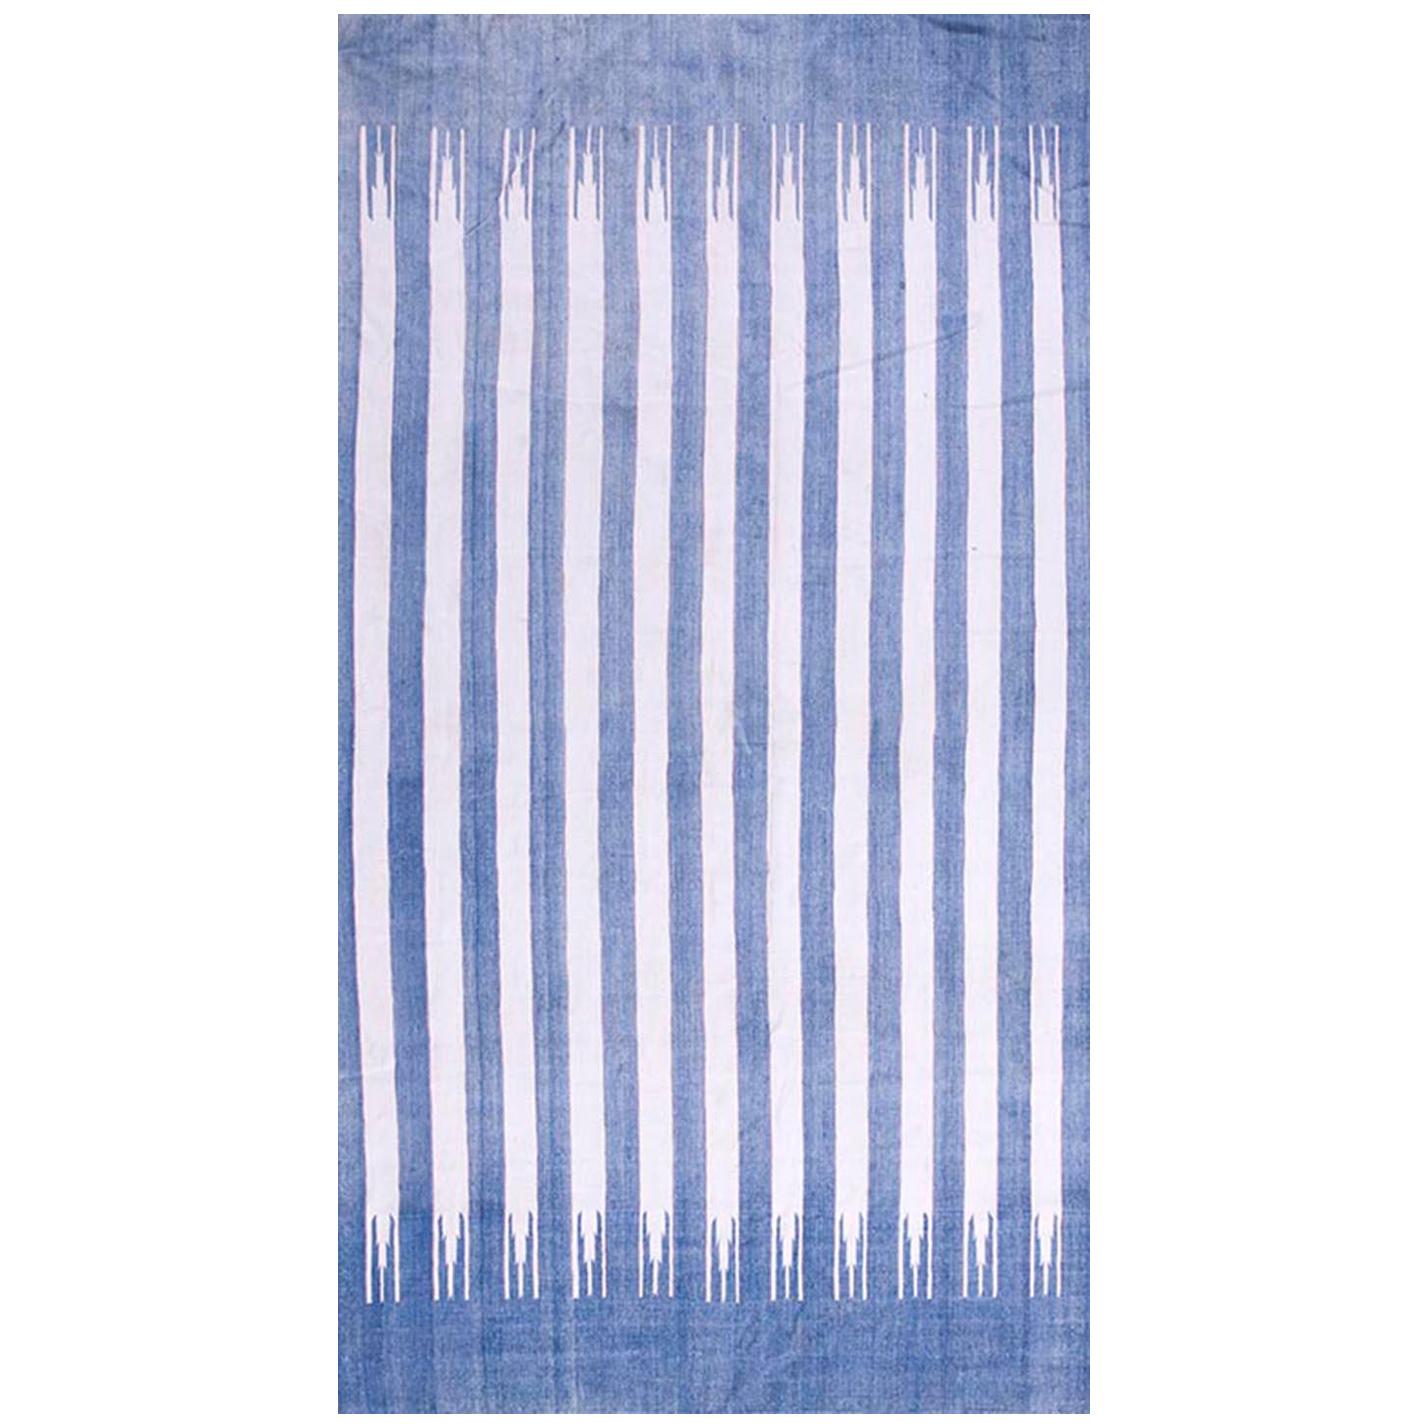 1930s Indian Cotton Dhurrie Carpet ( 5'10" x 10'9" - 178 x 328 )